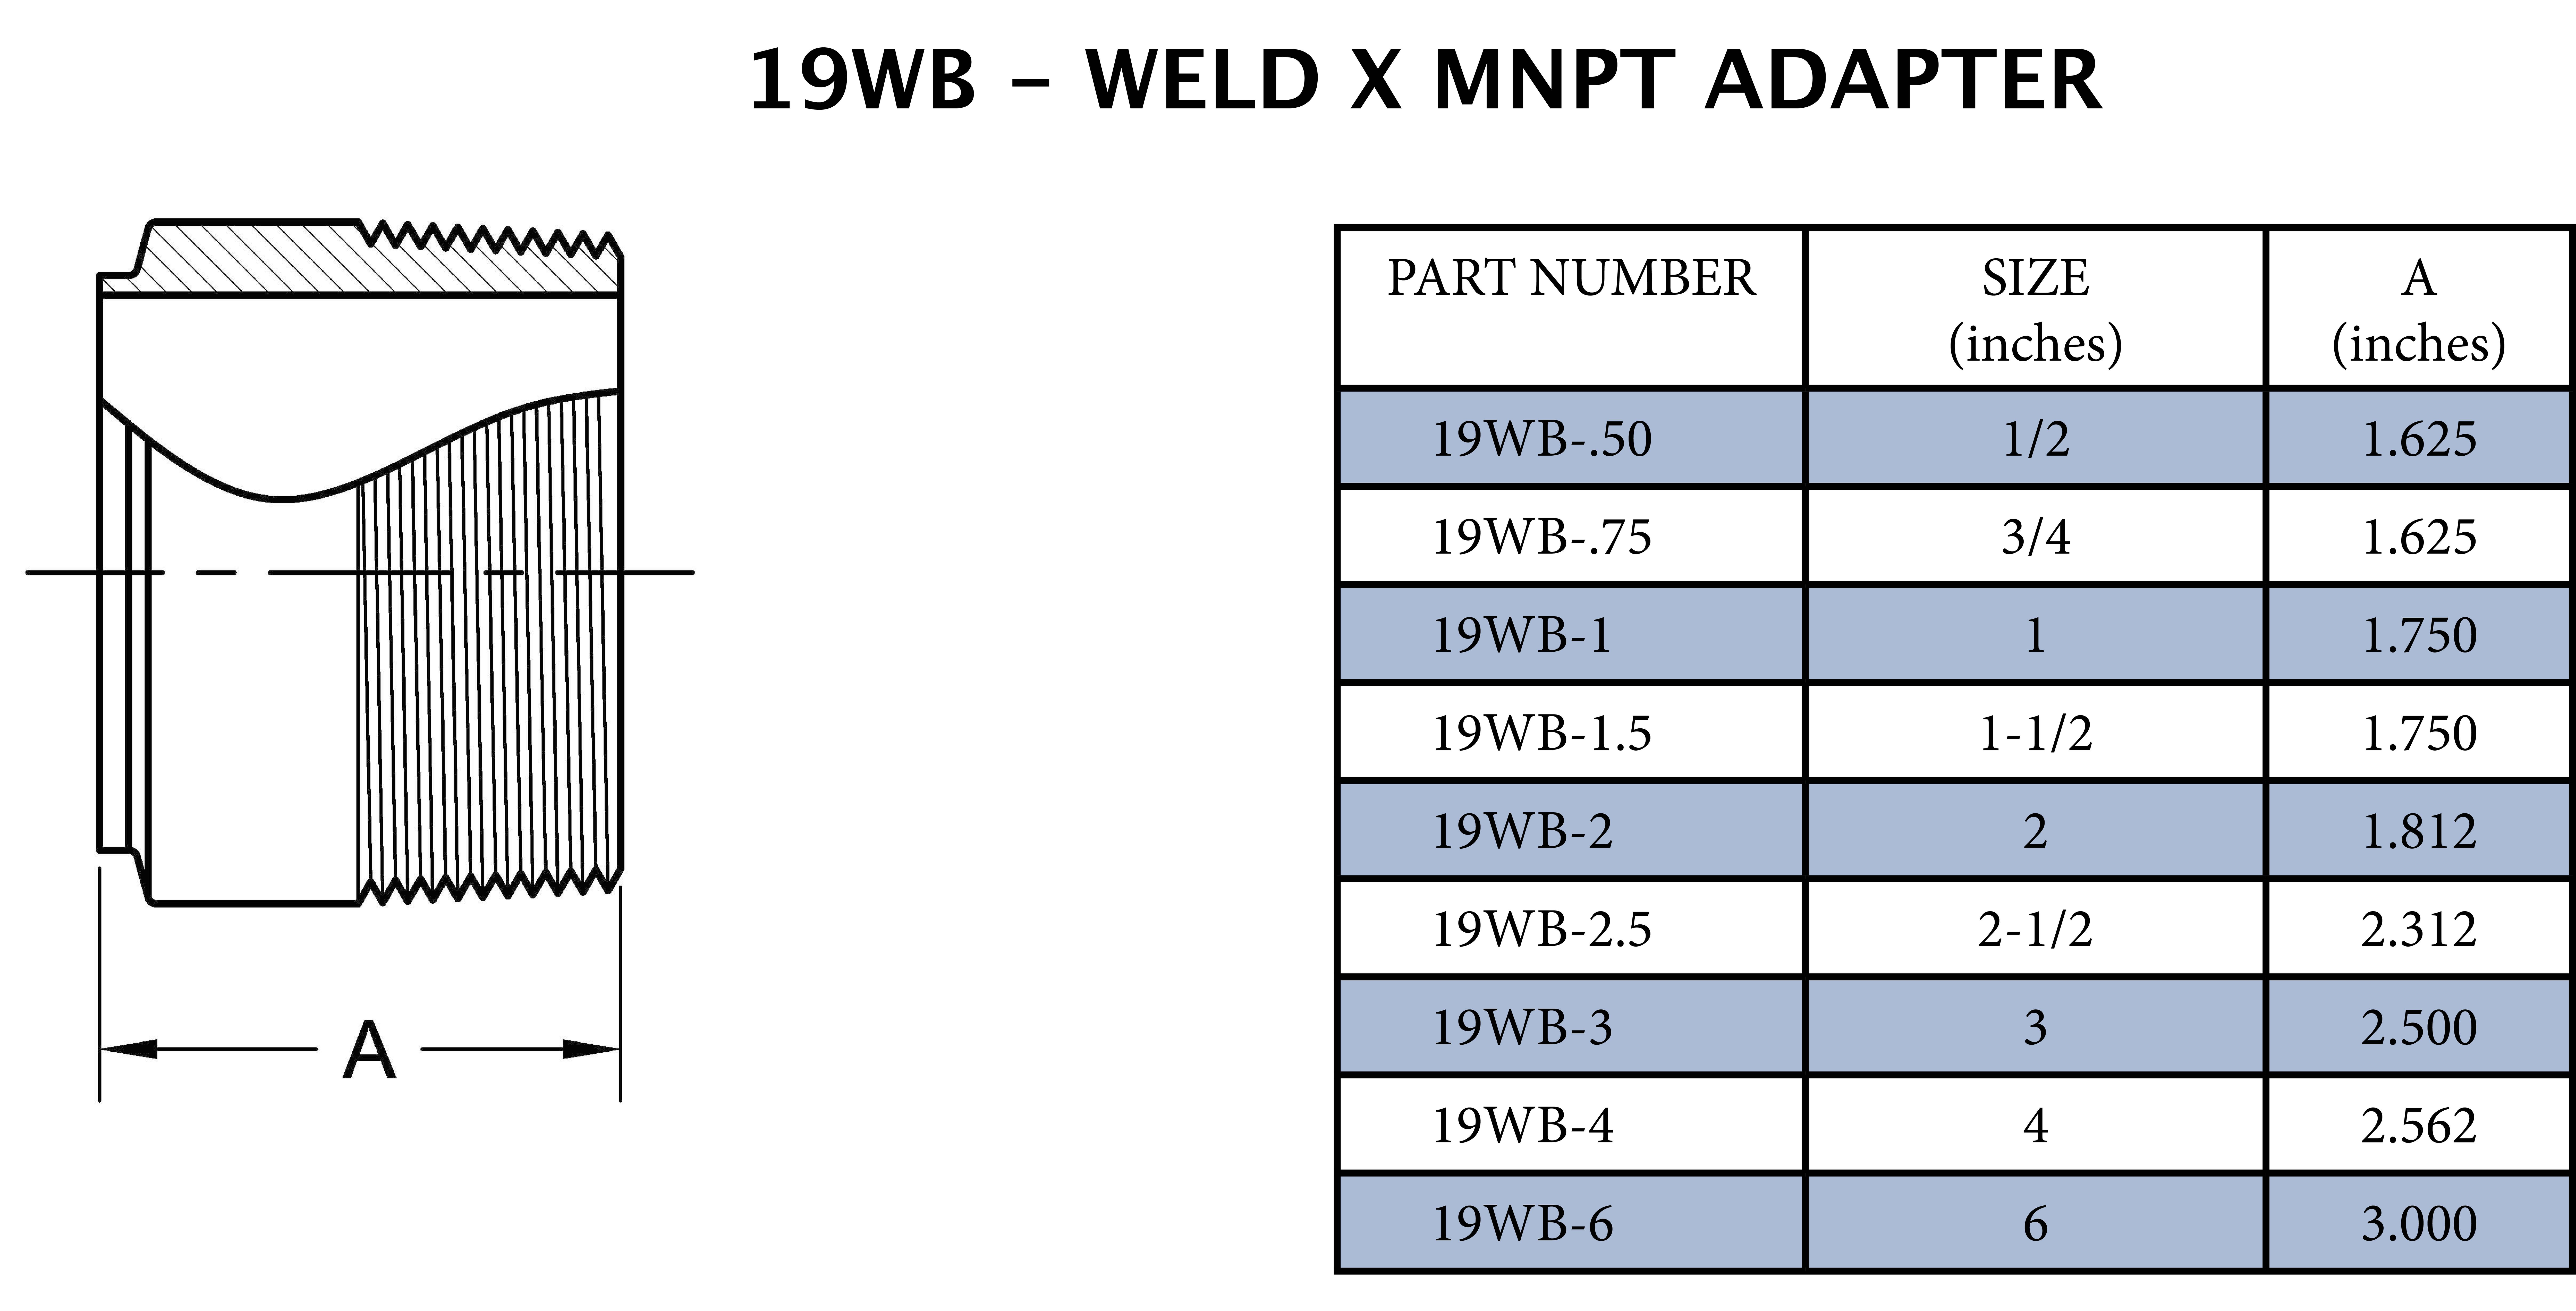 1-1/2 Butt Weld End X Mnpt Adapter - 1-3/4 Long 316SS